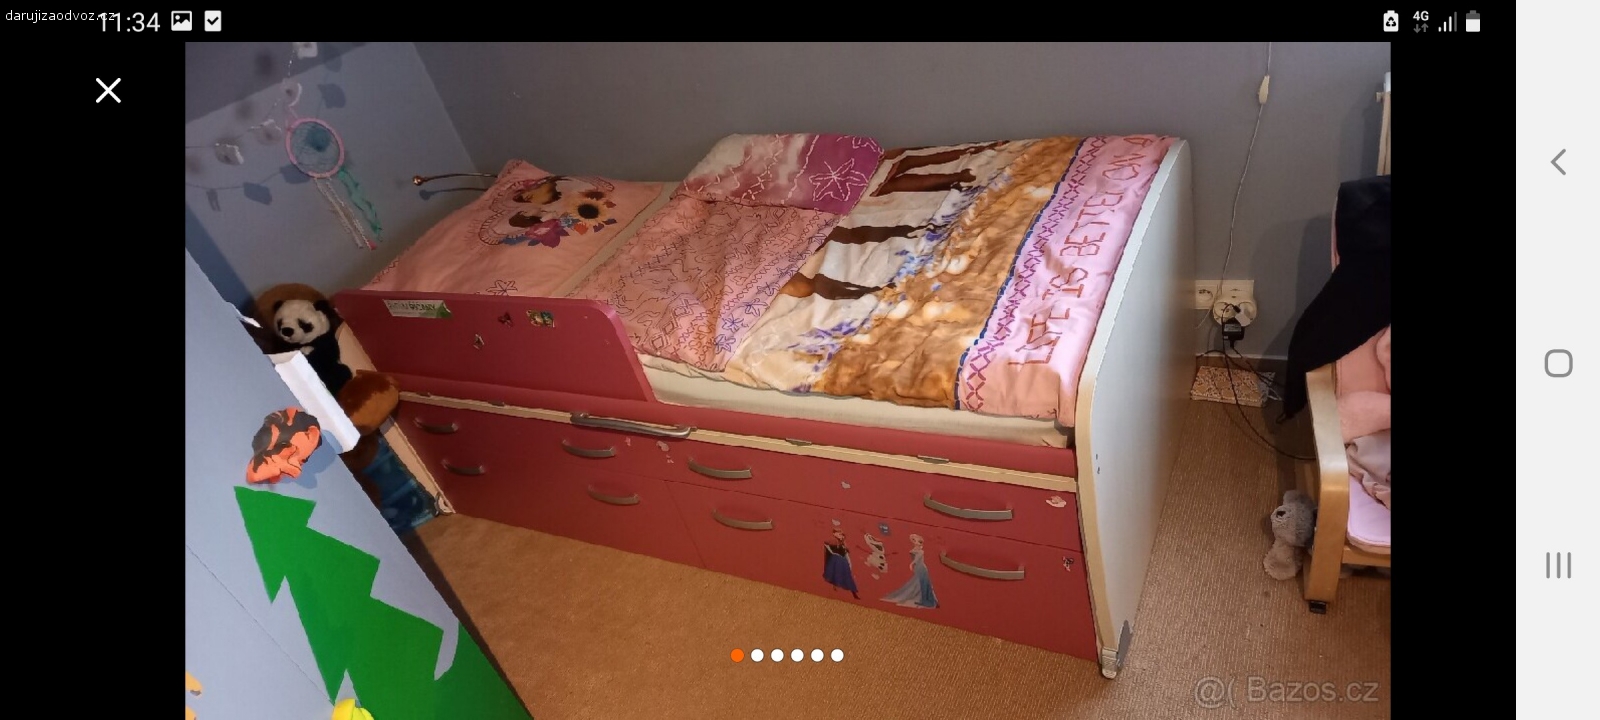 Dívčí postel se šuplíky. Krásná a hlavně praktická růžová postel 200x90cm se 4 šuplíky. Rozložena v garáži, nutno odvézt kombikem nebo lépe dodávkou. Prosím zprávy jen na telefon.